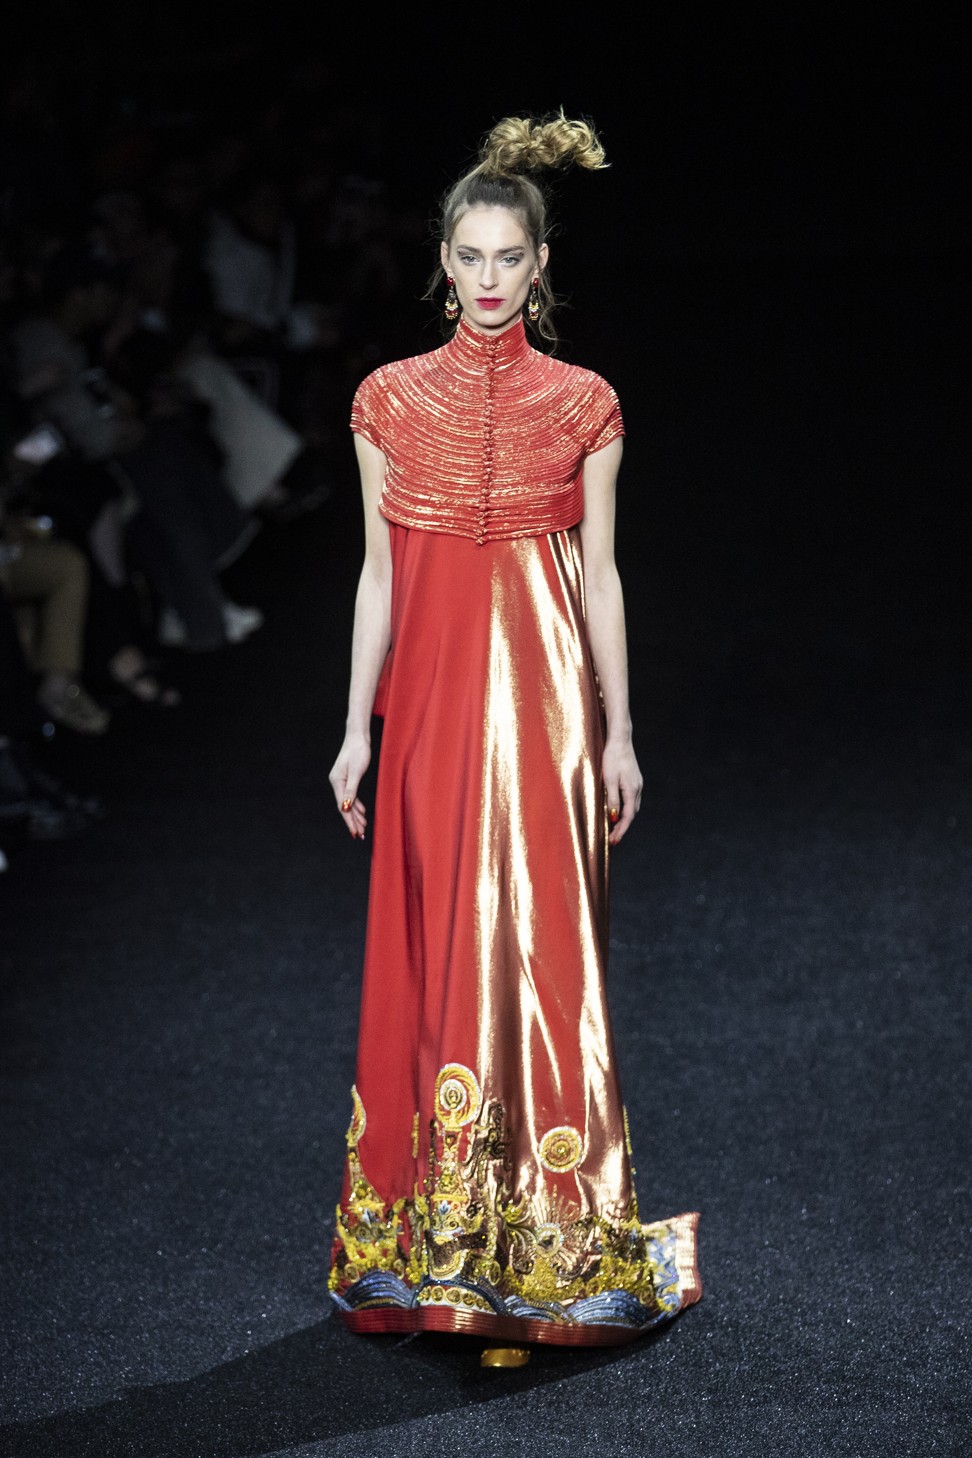 Paris Haute Couture 2019: China’s fashion ‘queen’ Guo Pei's lavish ...